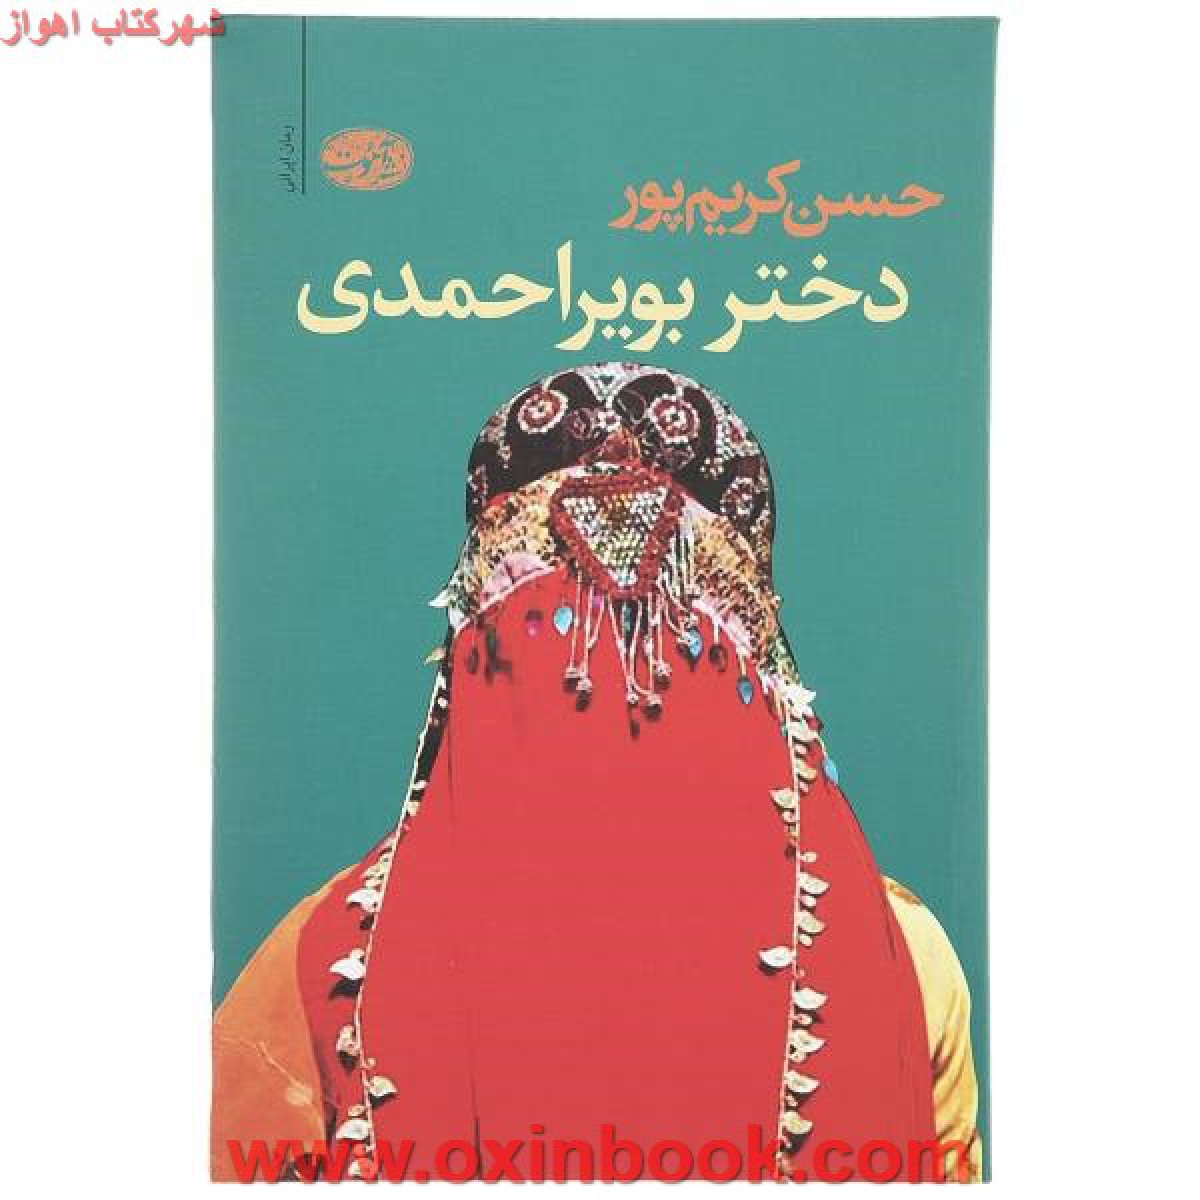 دختر بویر احمدی/حسن کریم پور/نشرآموت